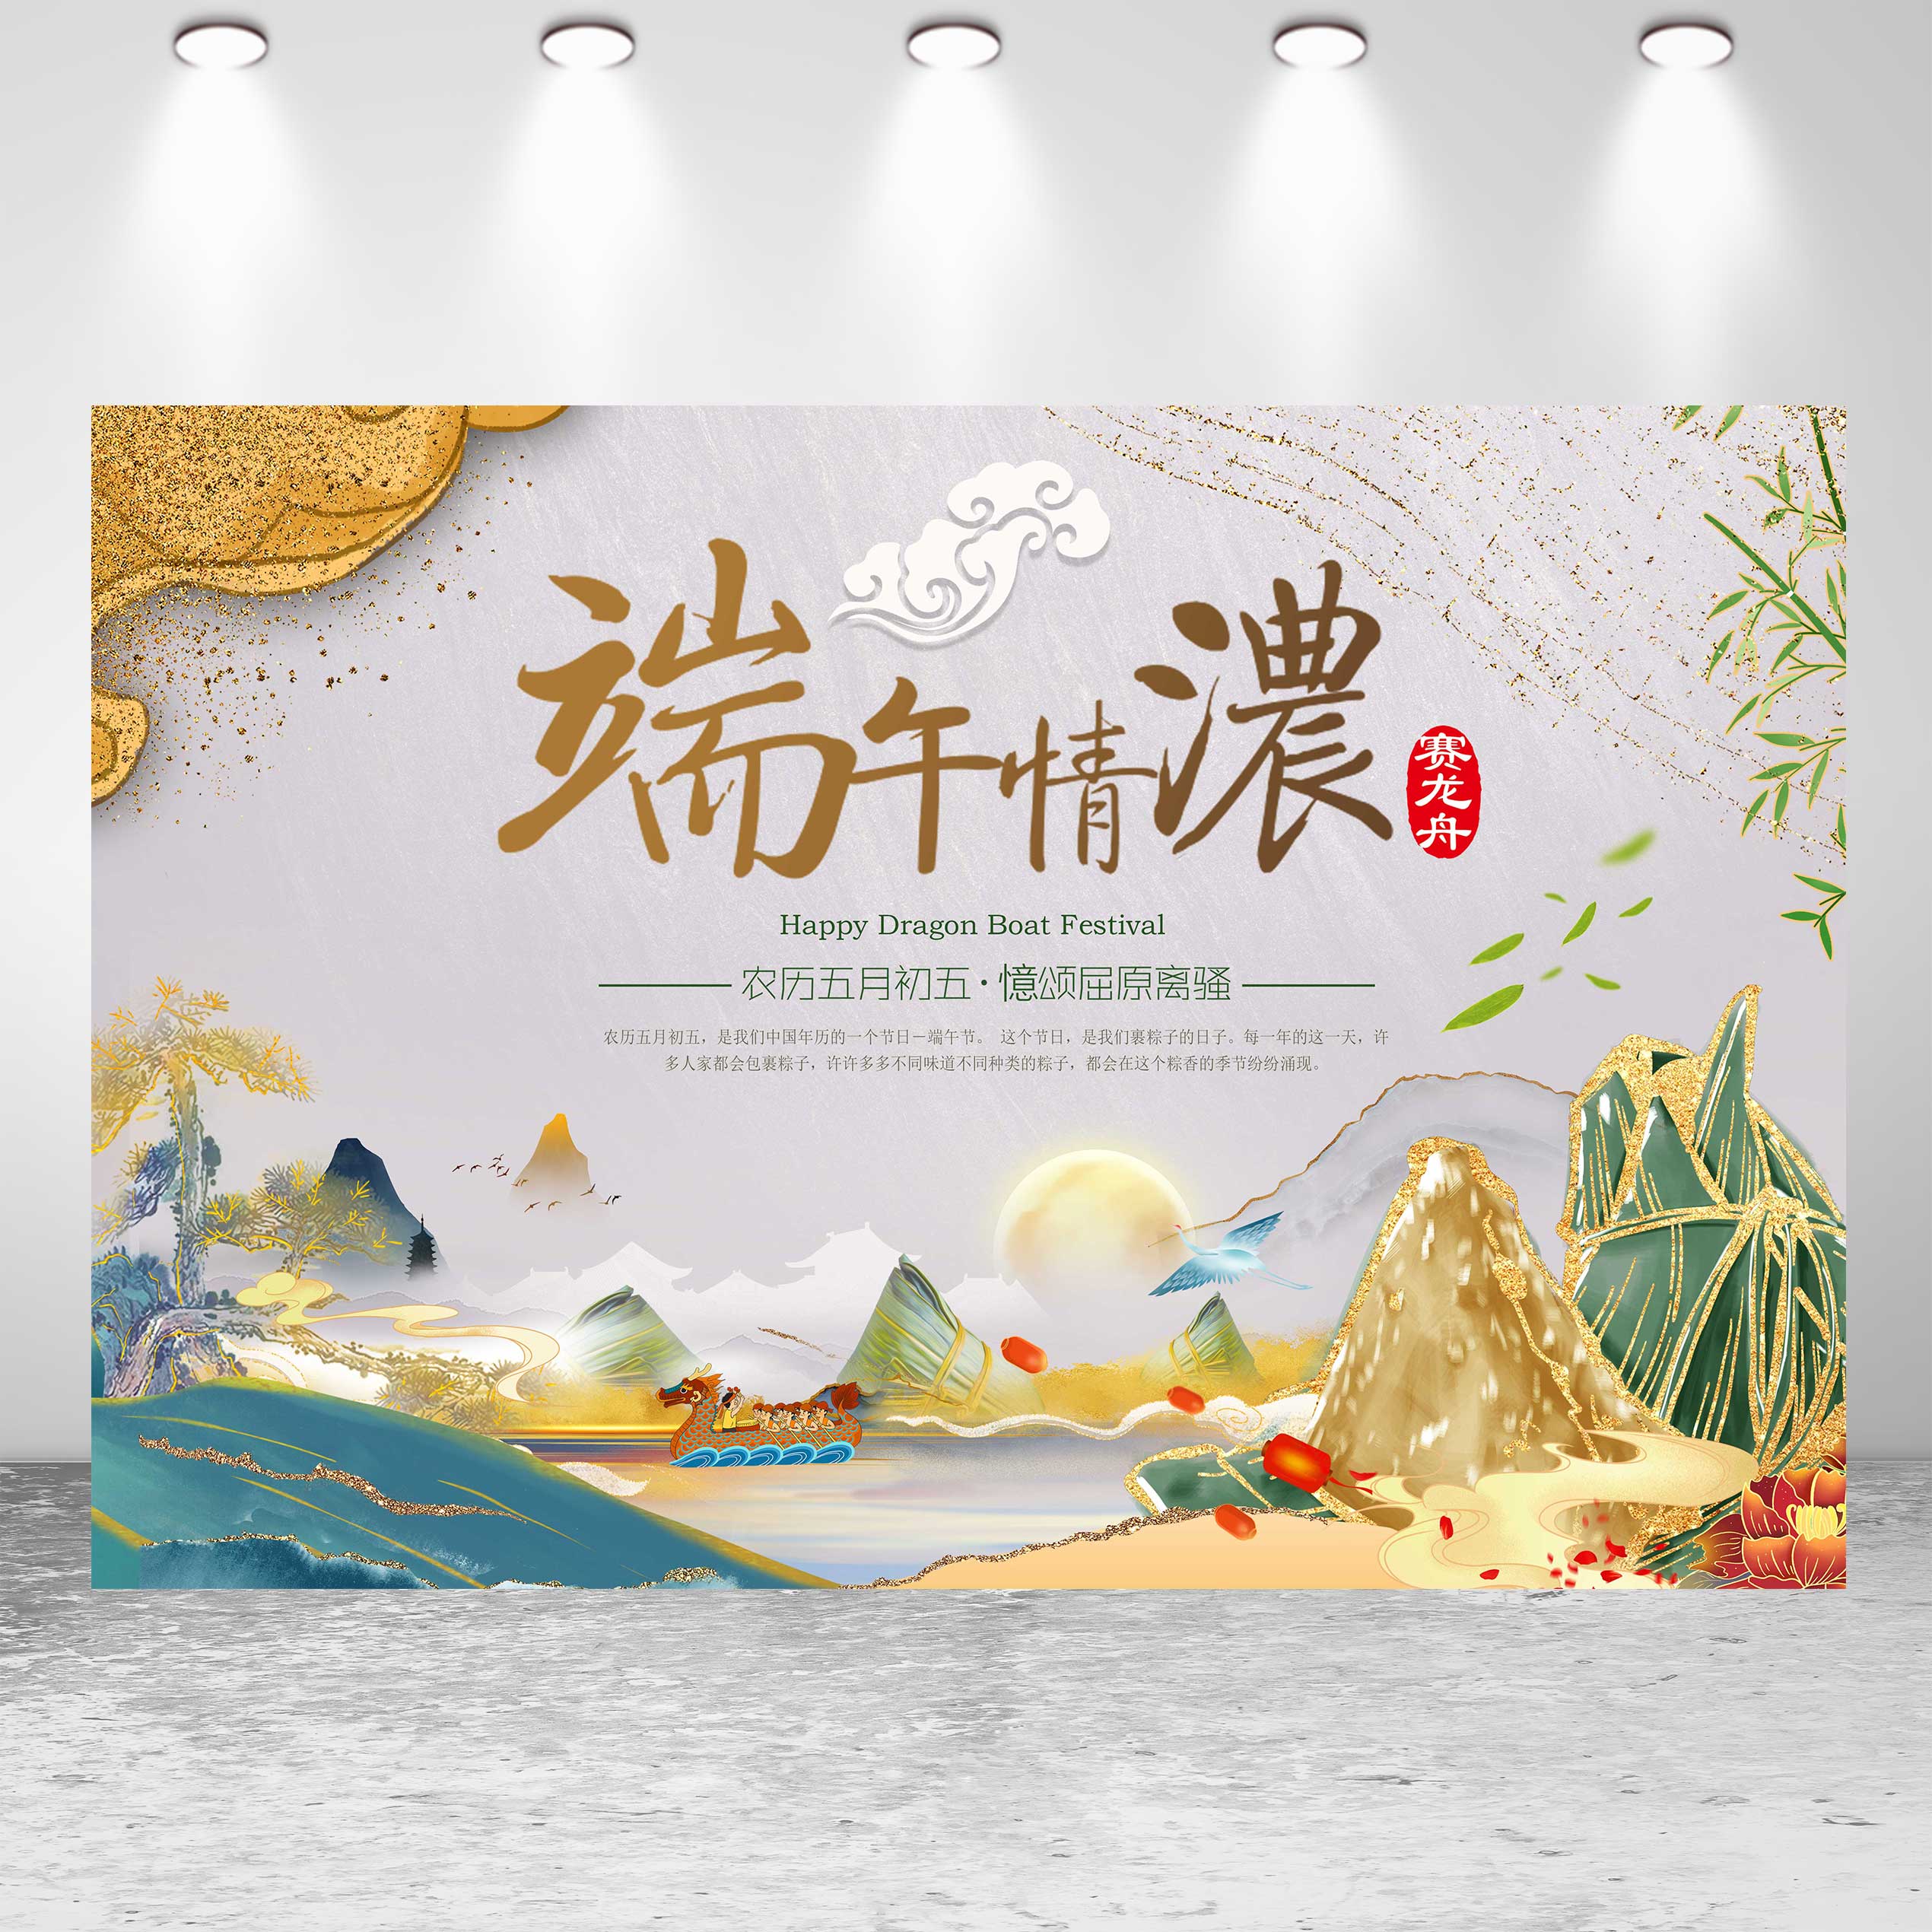 端午节背景墙布置传统节日划龙舟包粽子社区活动节日氛围感挂布